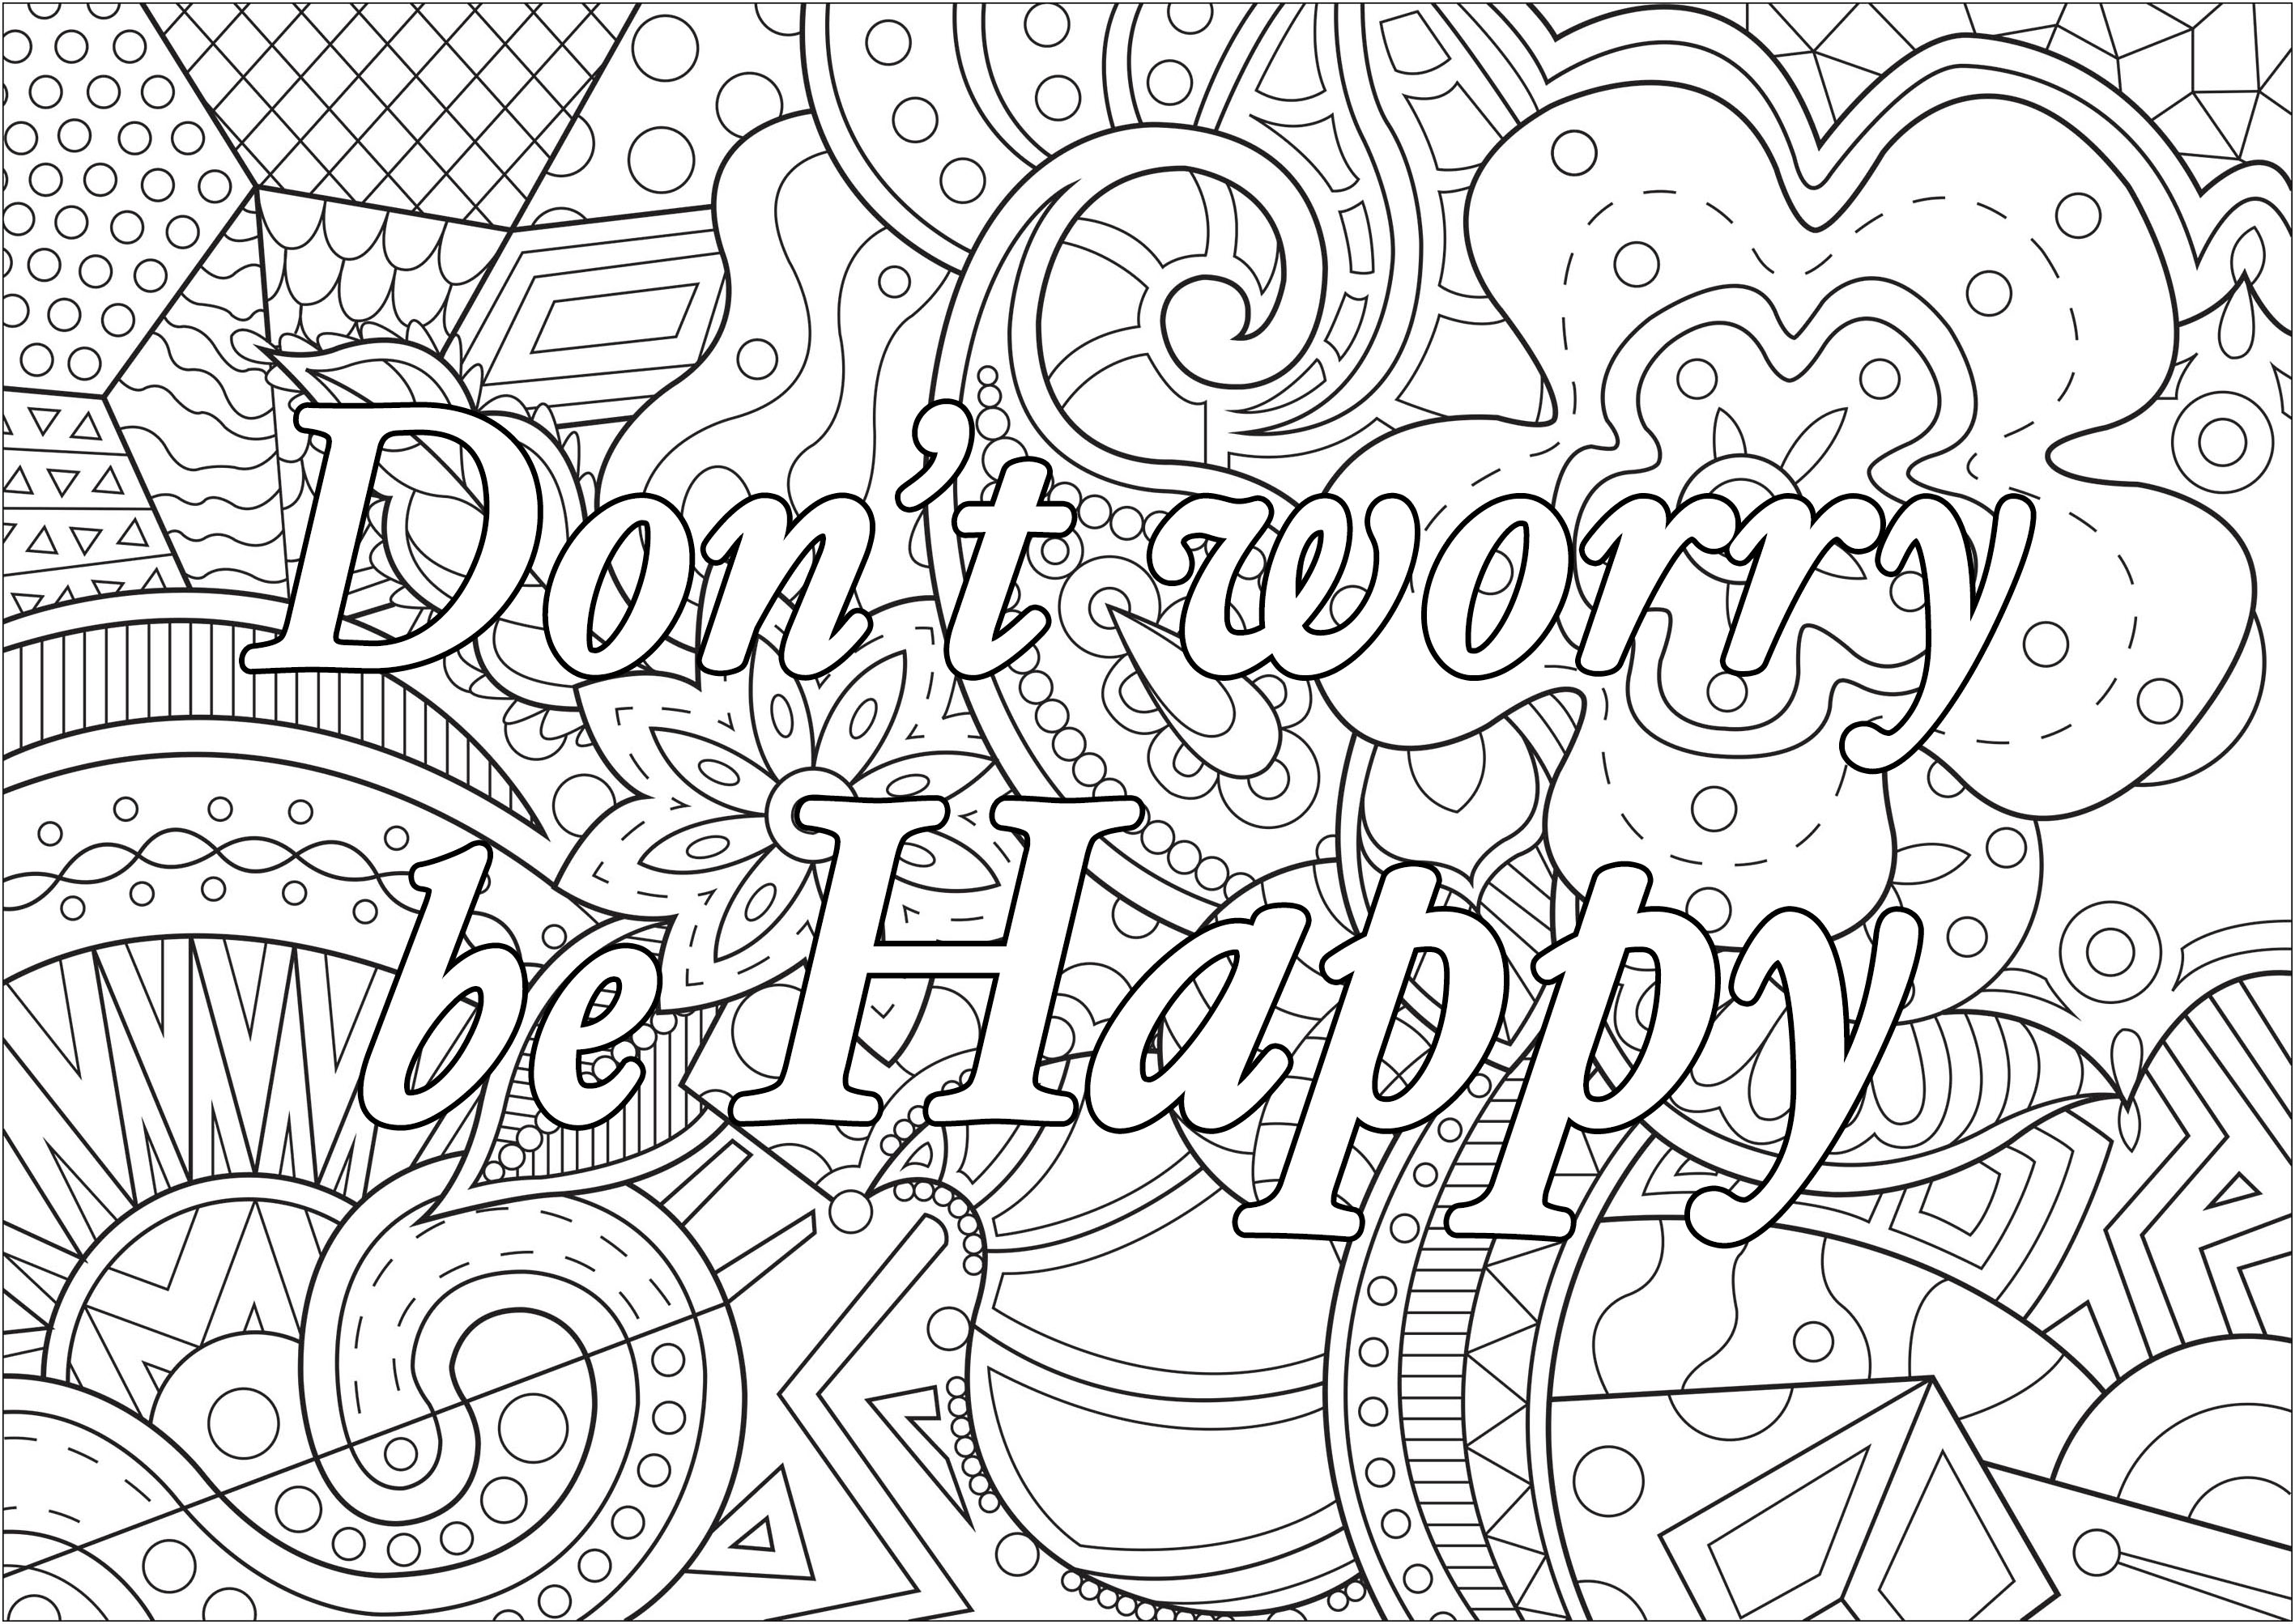 Non preoccupatevi, siate felici